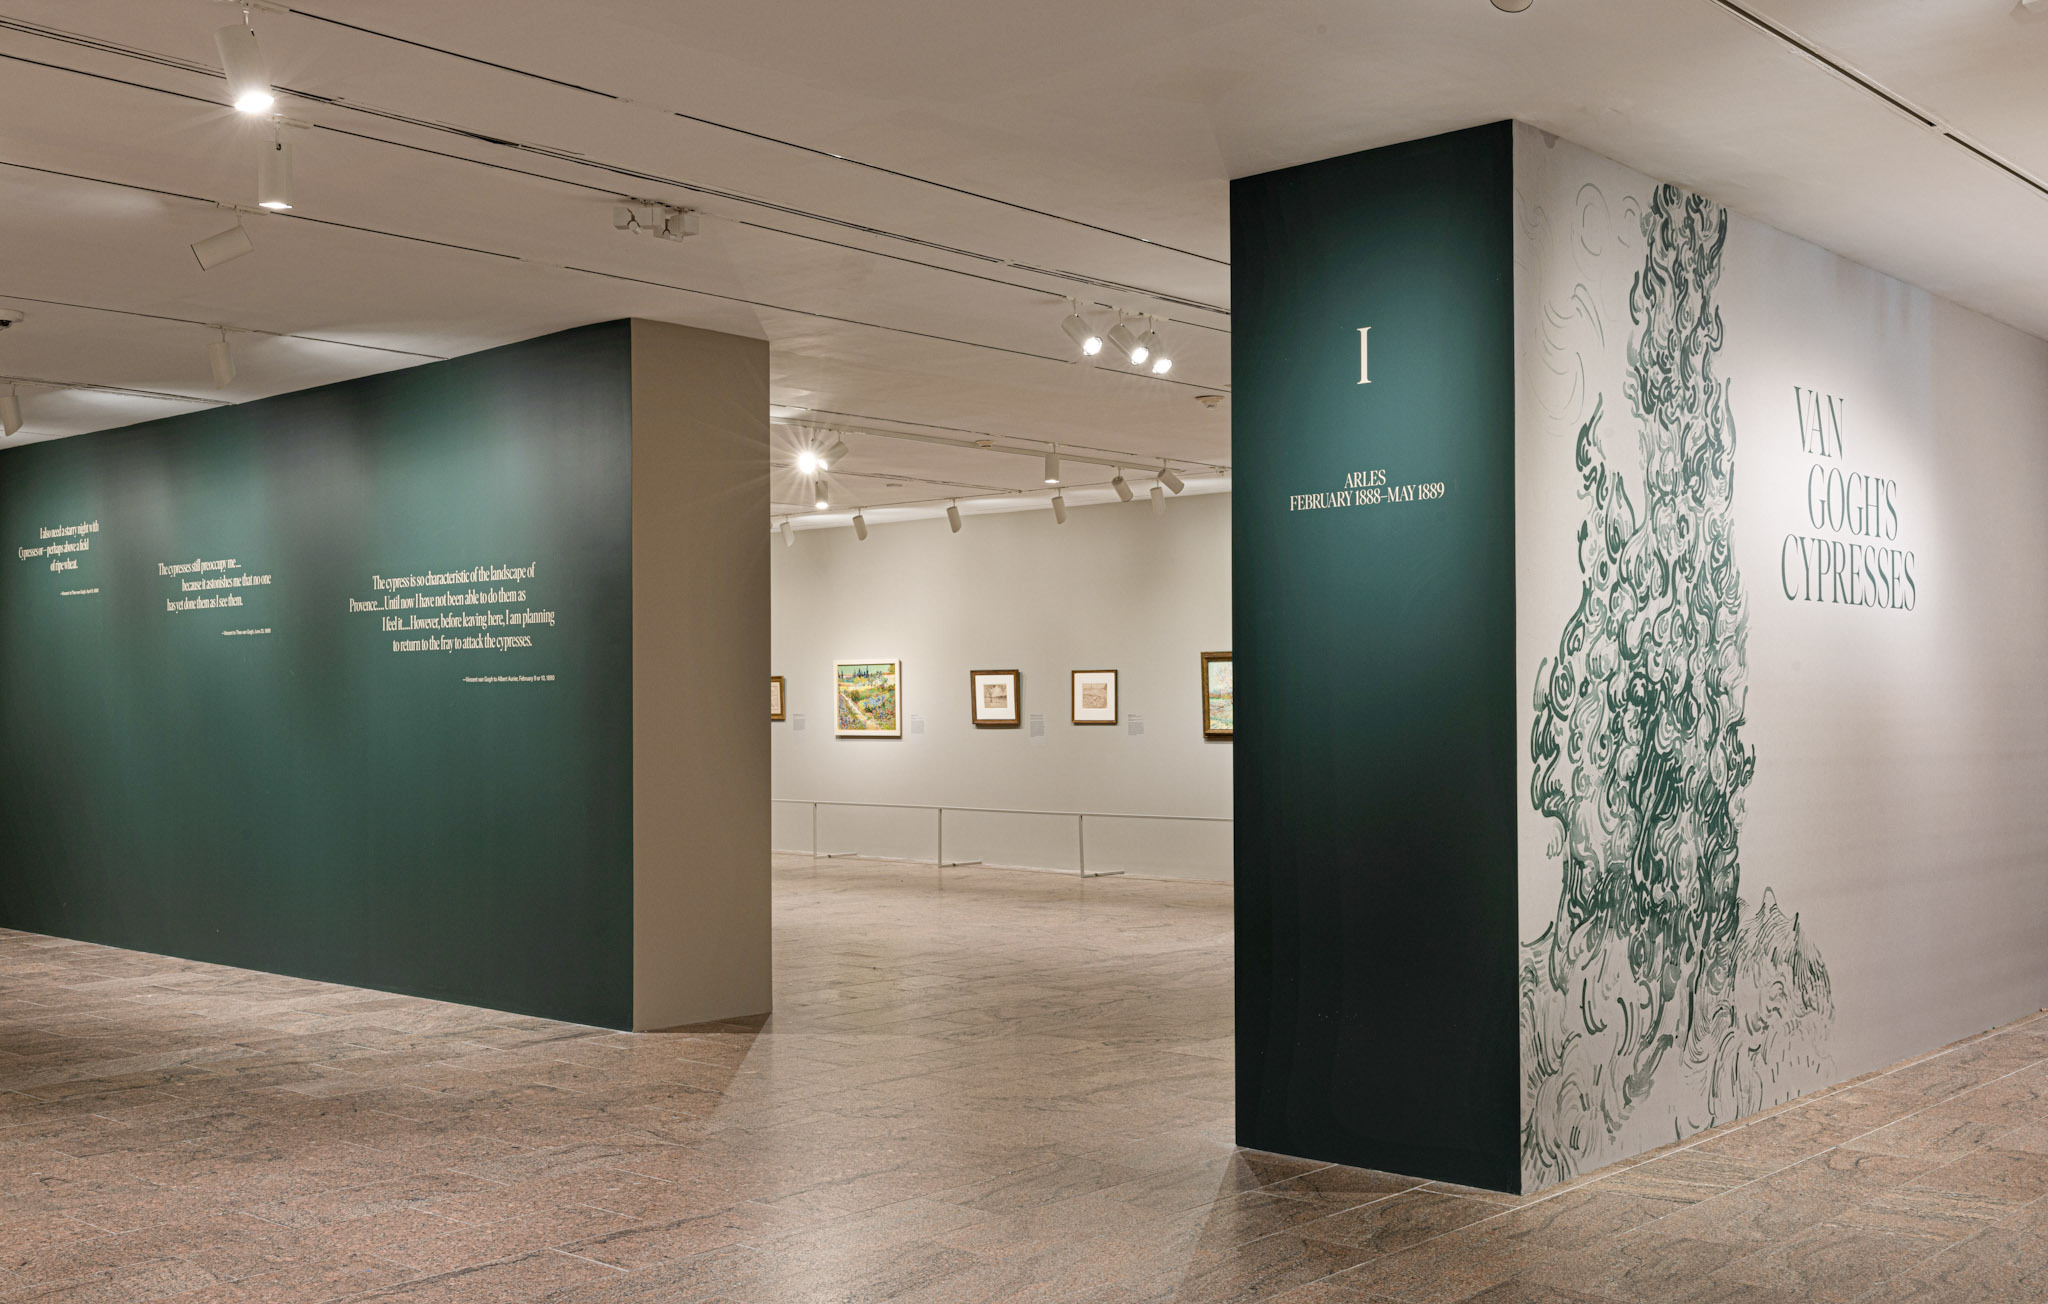 Van Gogh’s Cypresses at The Met